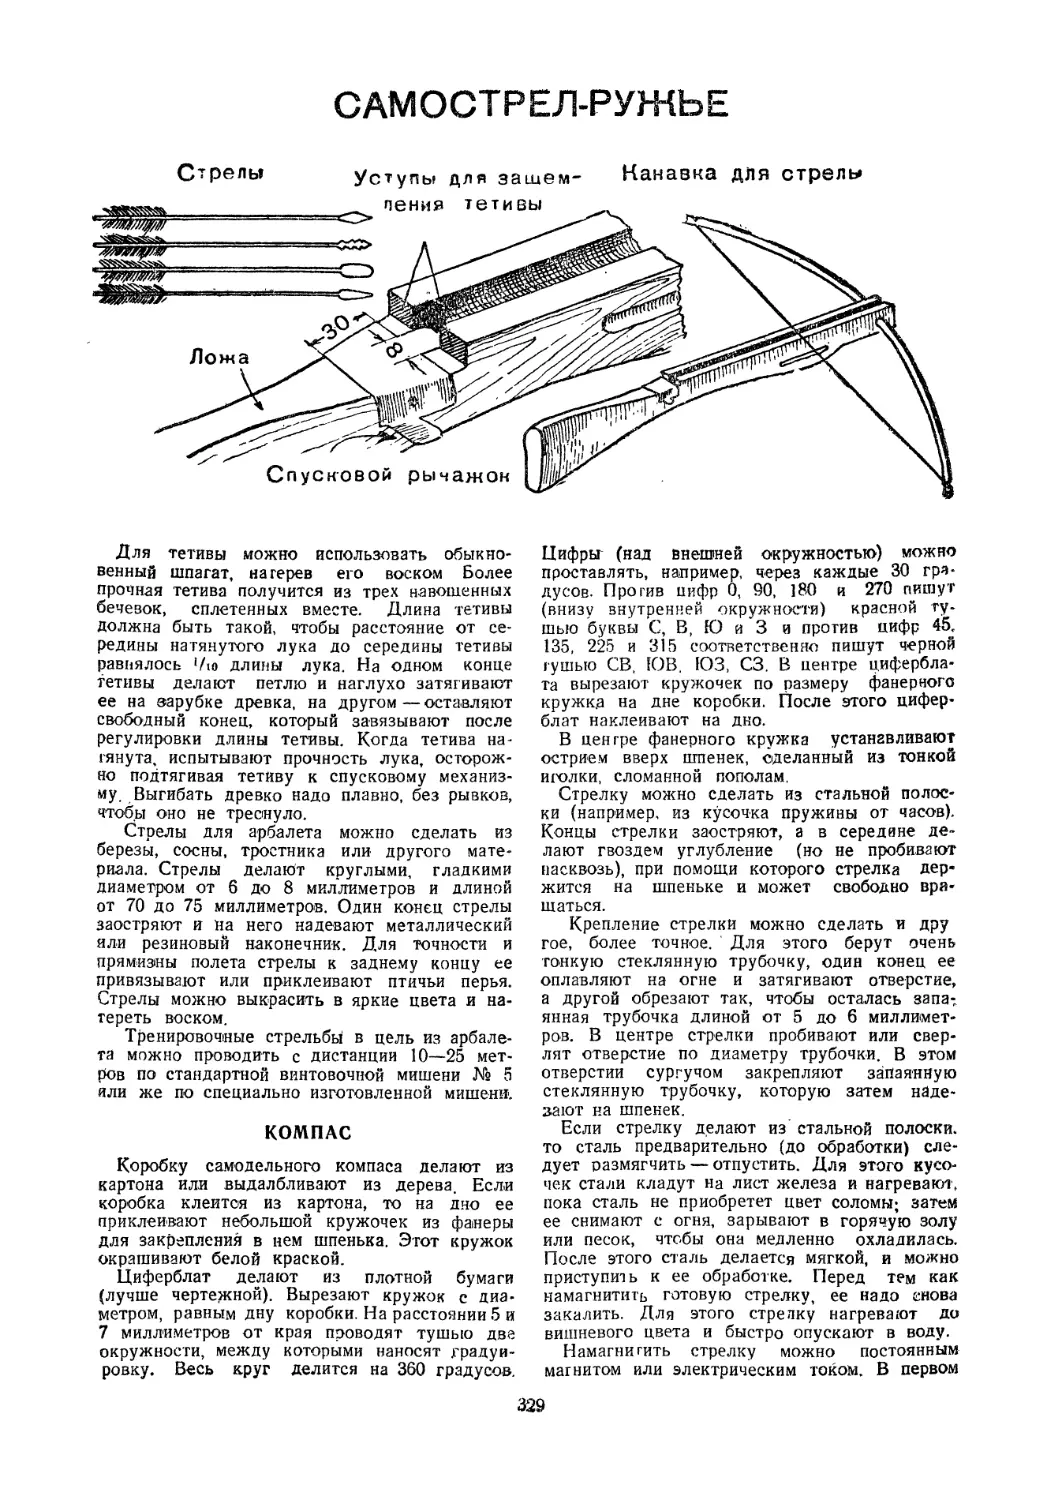 Учебное деревянное ружье
Учебная деревянная граната
Макет станкового пулемета